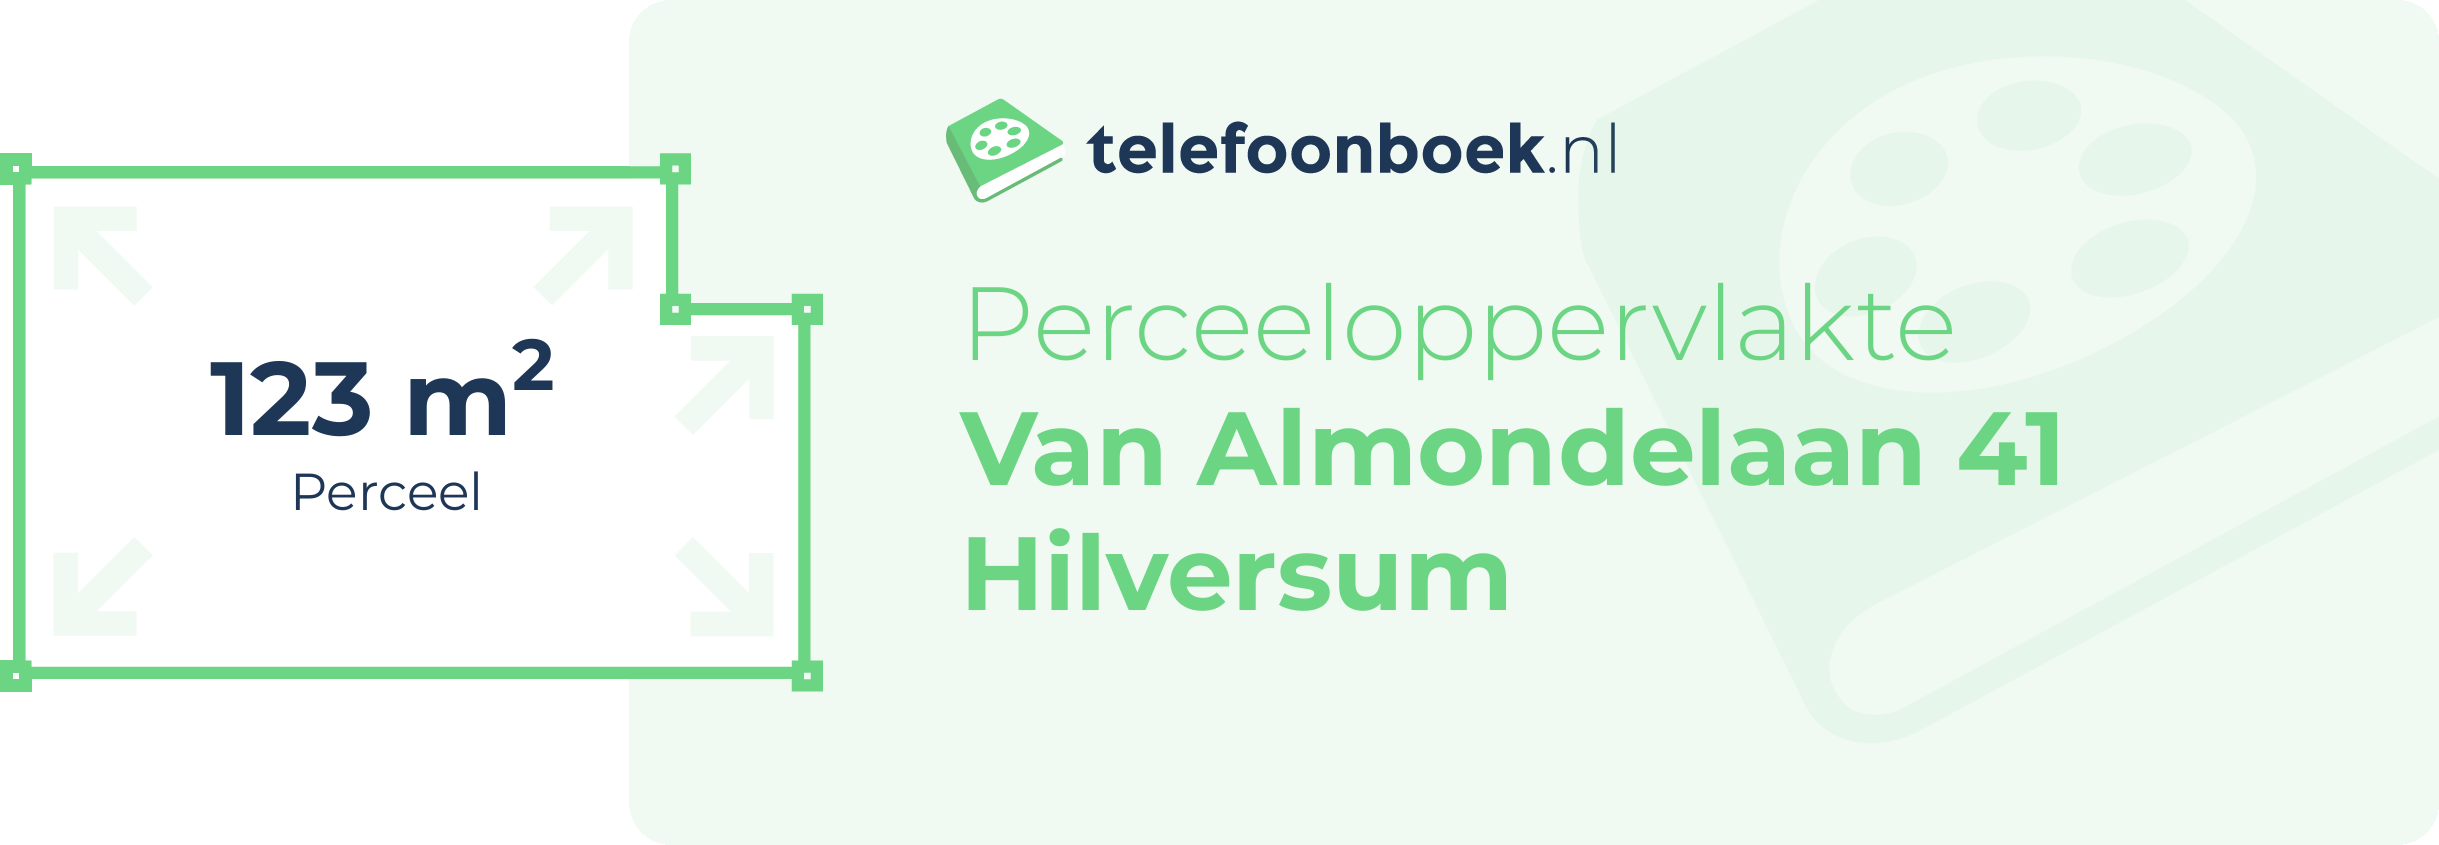 Perceeloppervlakte Van Almondelaan 41 Hilversum